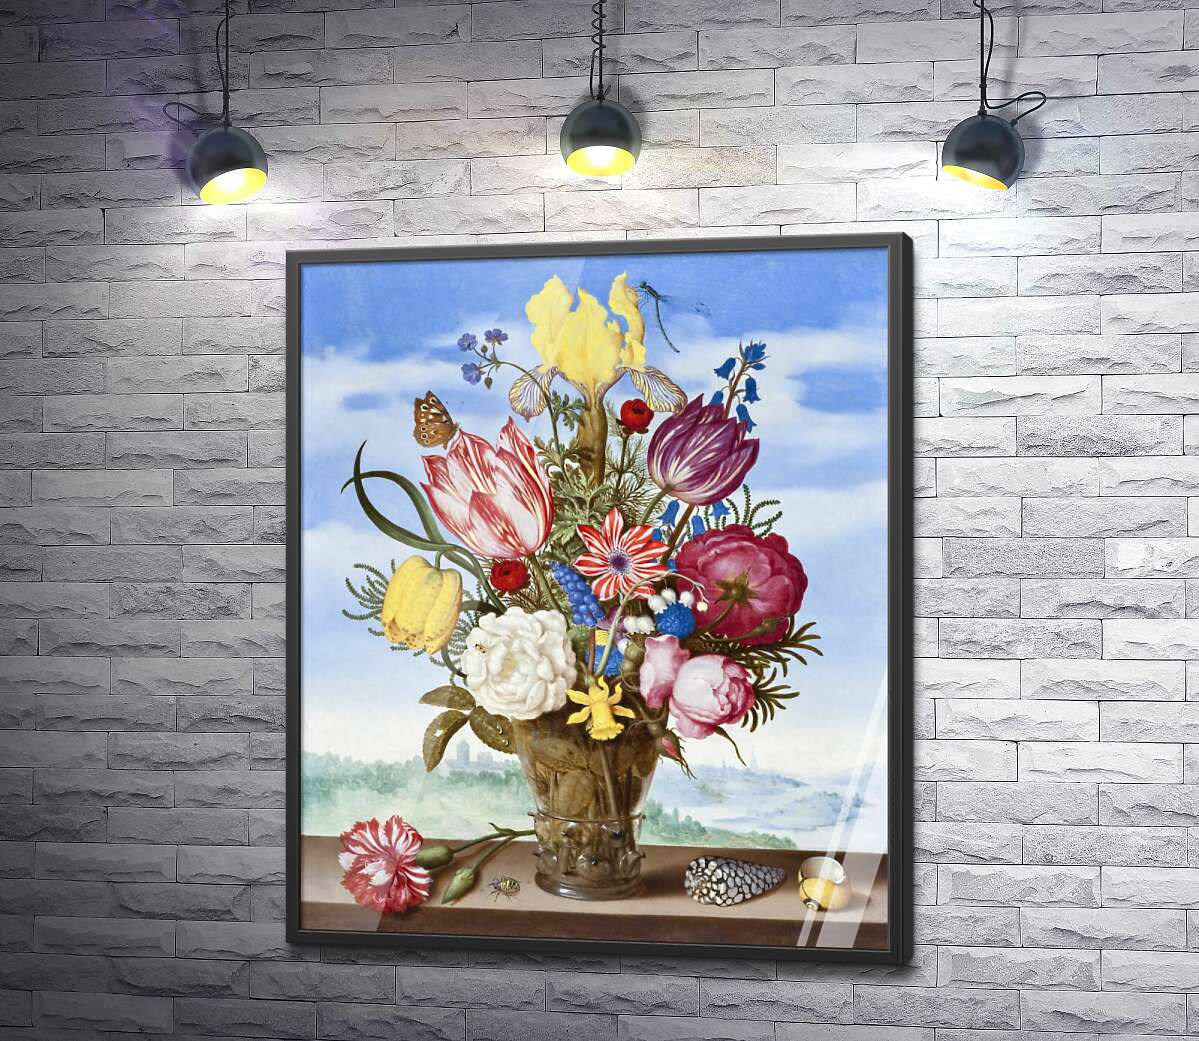 постер Букет цветов на выступе (Bouquet of Flowers on a Ledge) - Амброзиус Босхарт Старший (Ambrosius Bosschaert the Elder)